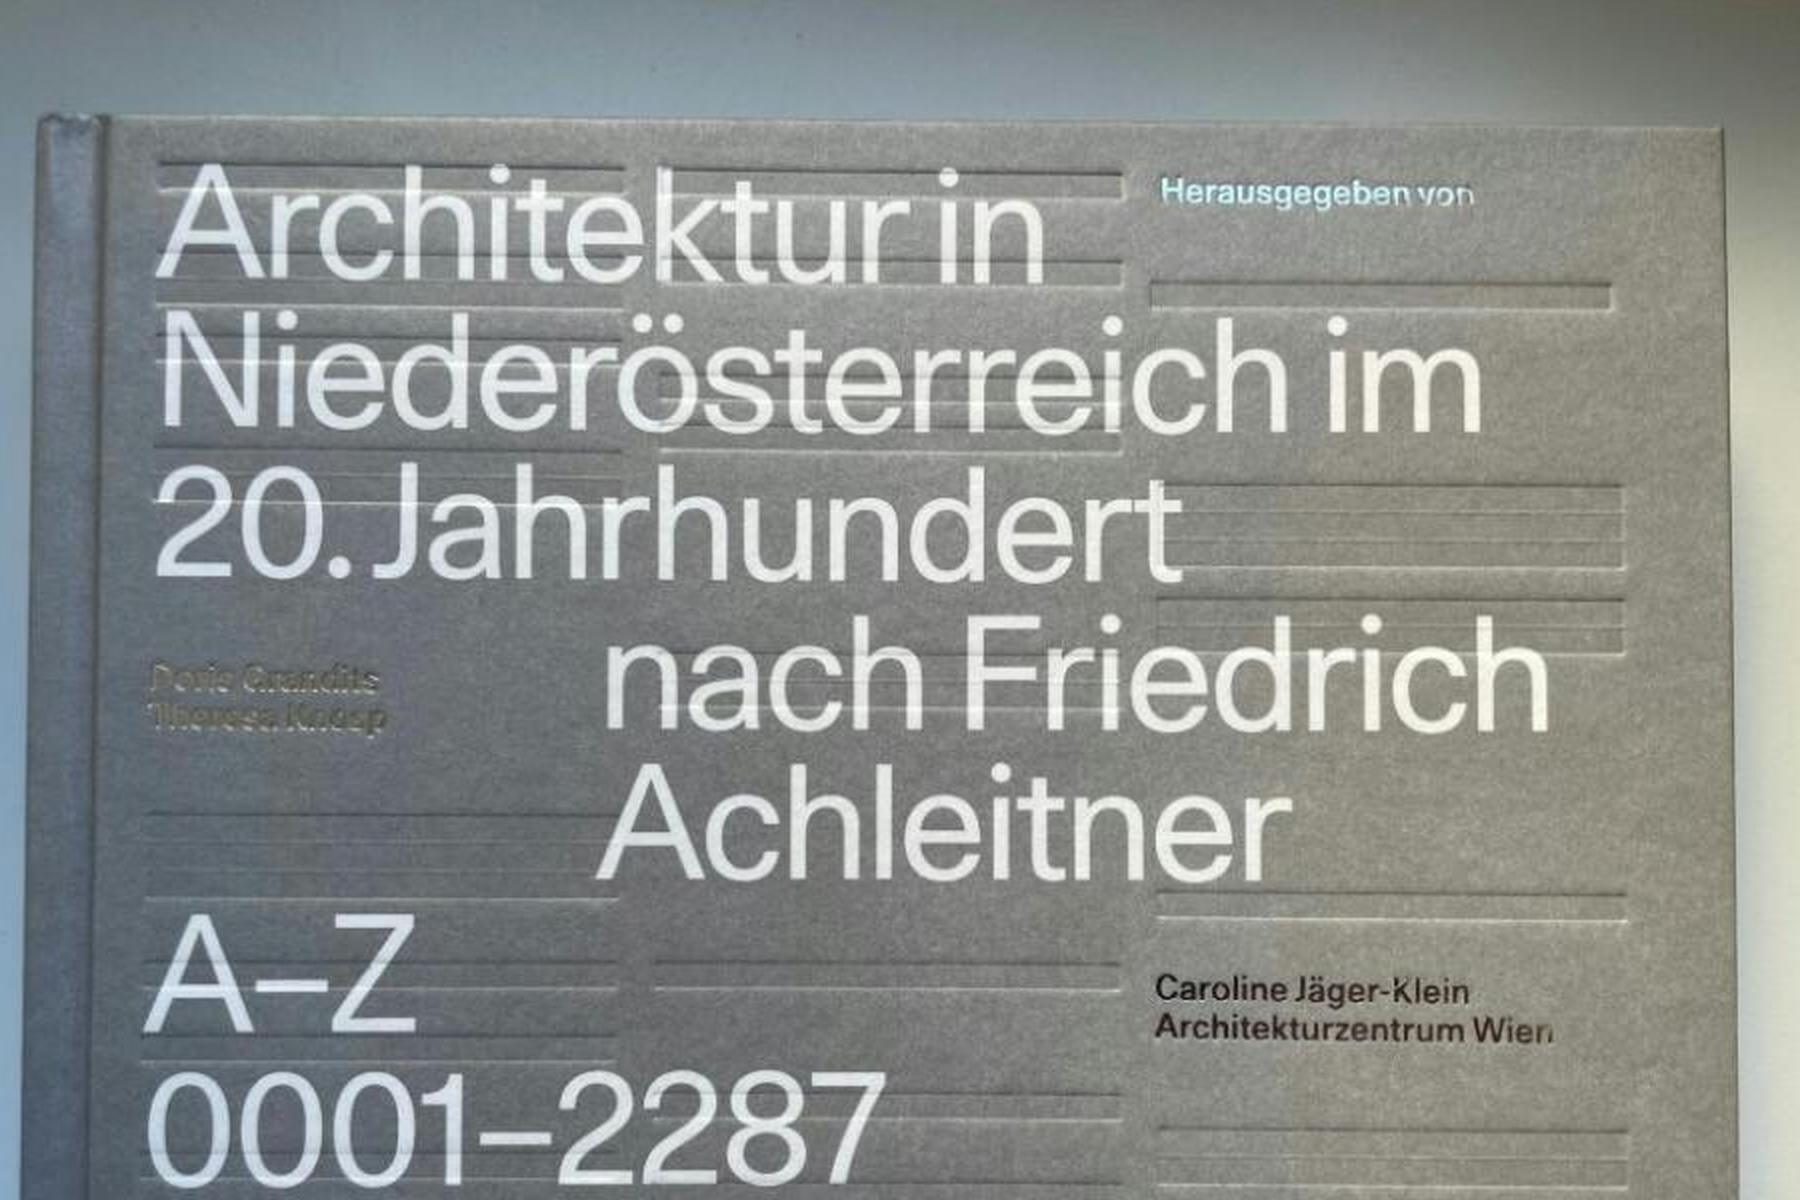 Wien/St. Pölten: Friedrich Achleitners Architekturführer nun abgeschlossen